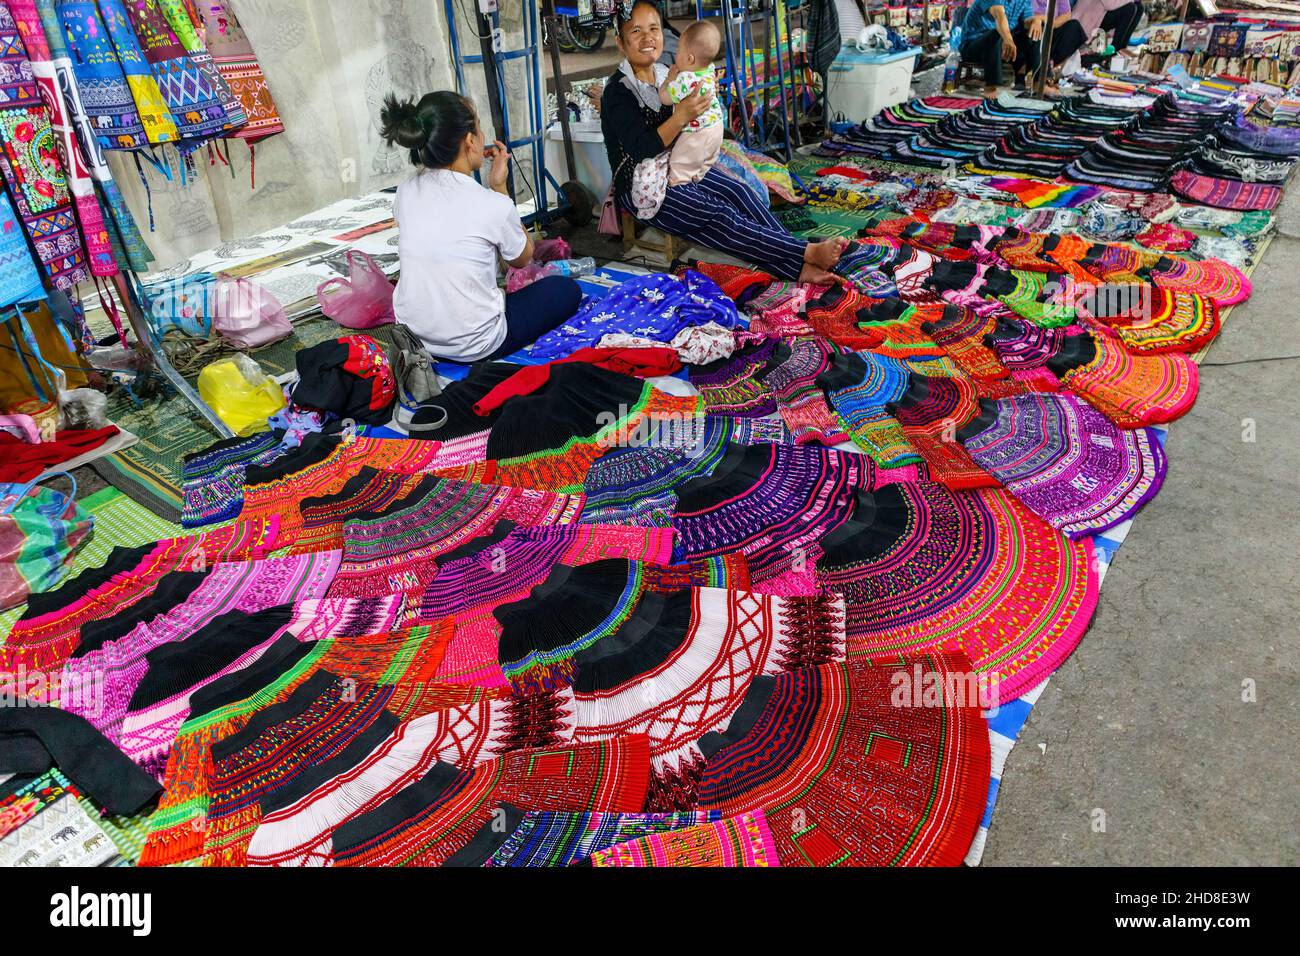 Farbenfrohe Röcke und Stoffe im lokalen Stil werden auf dem Nachtmarkt in  der Fußgängerzone im Zentrum von Luang Prabang, im Norden von Laos,  Südostasien, ausgestellt Stockfotografie - Alamy